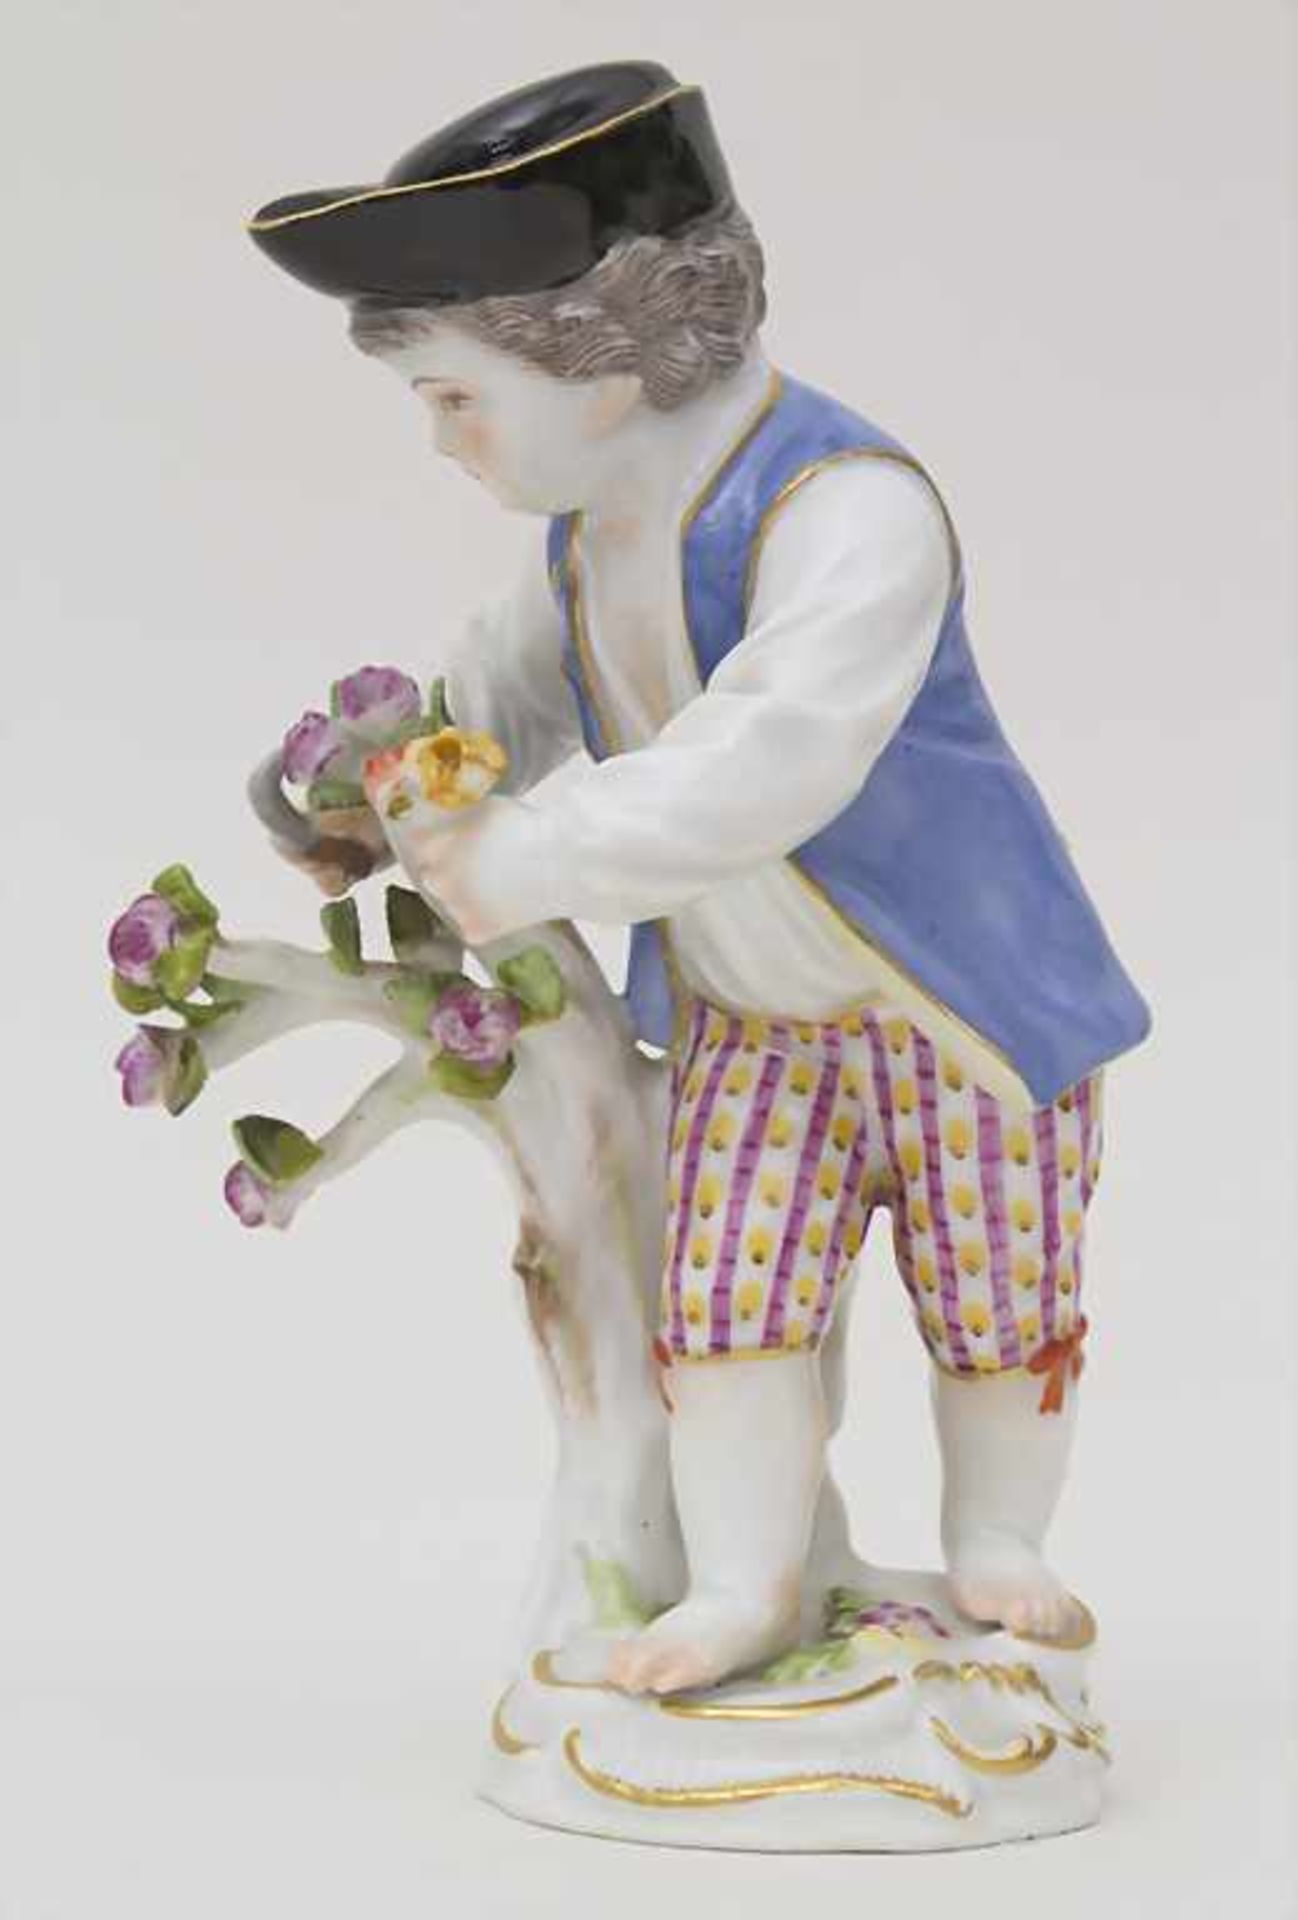 Gärtnerkind 'Rosen schneidender Knabe' / A gardener child 'Rose cutting boy', Meissen, 1950 - Image 2 of 5